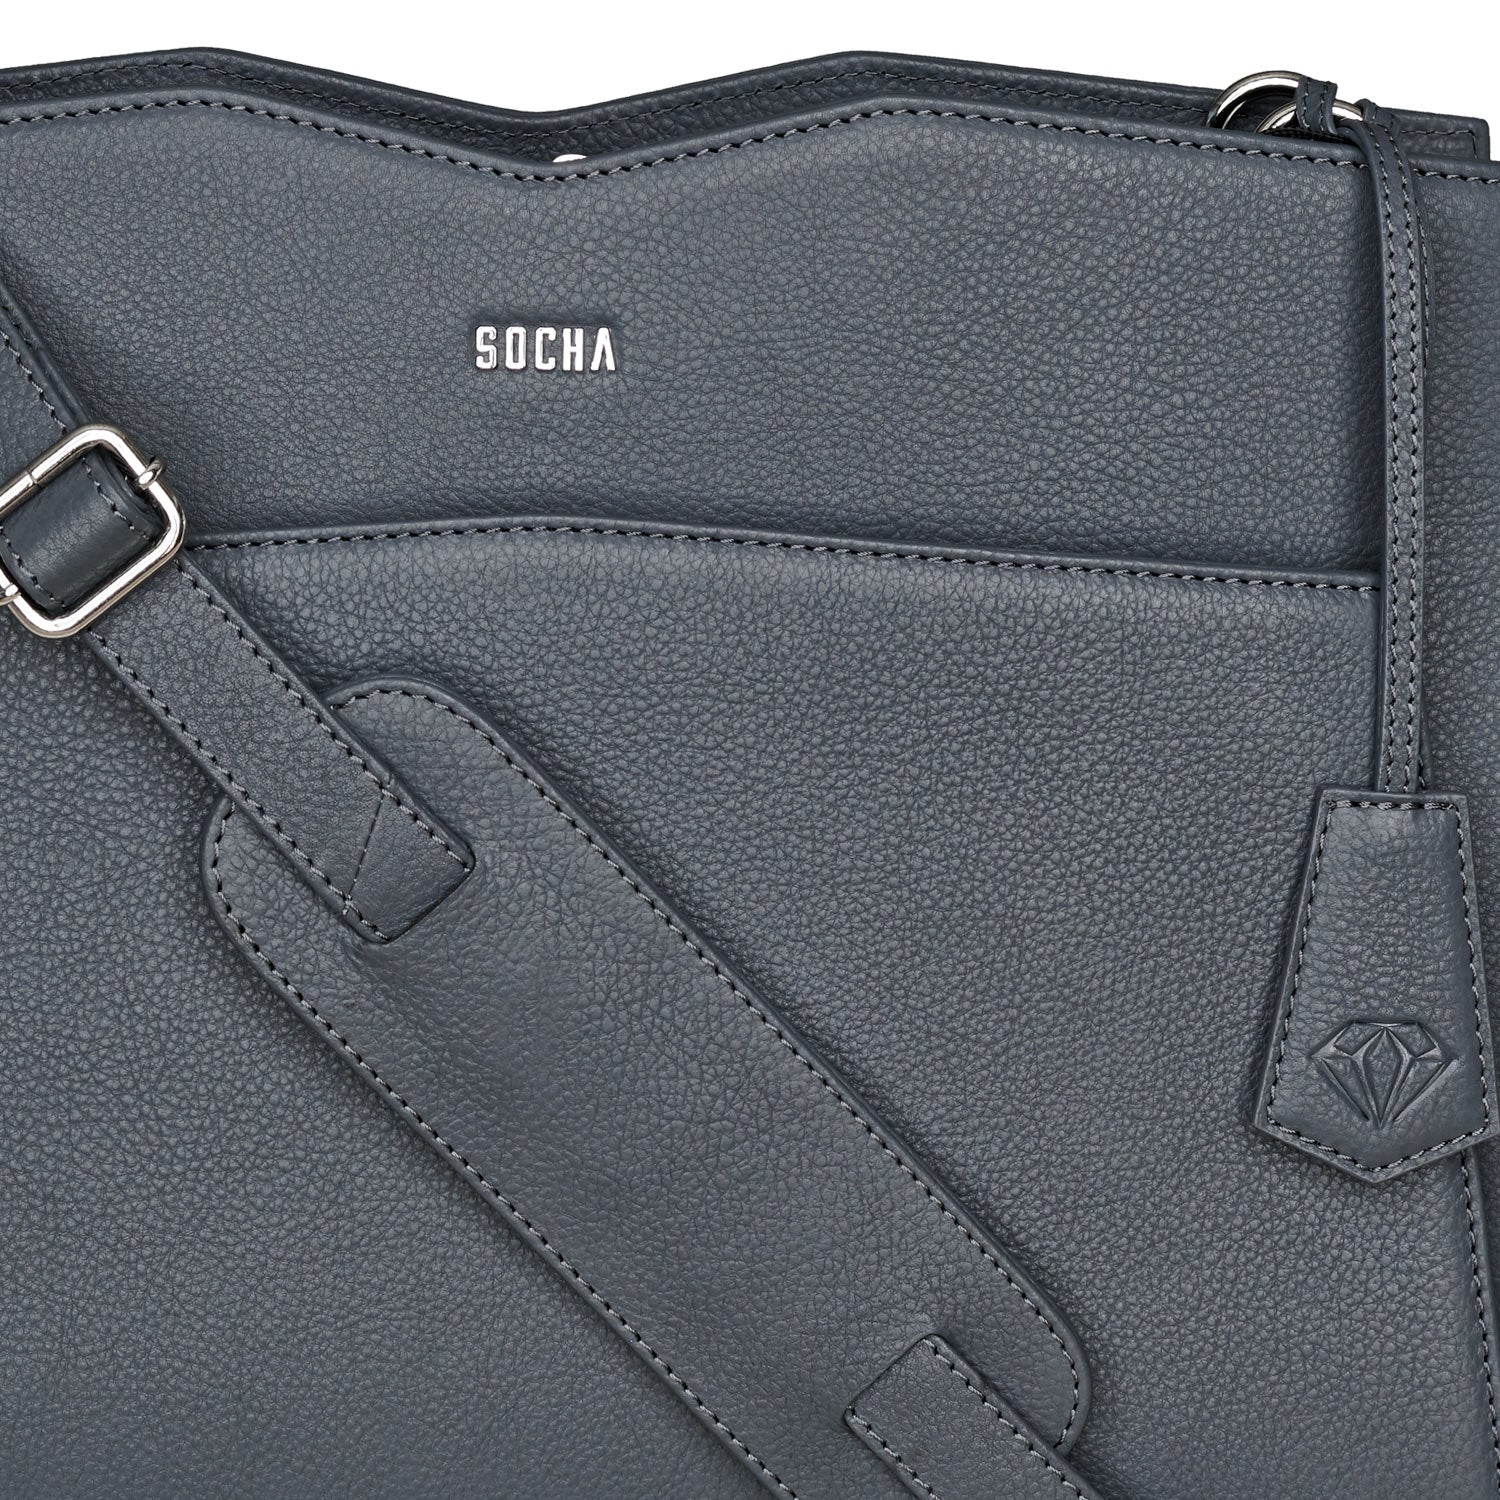 Socha diamond edition shoulder donkergrijs 14 inch werktas voor dames logo tas met schouderband